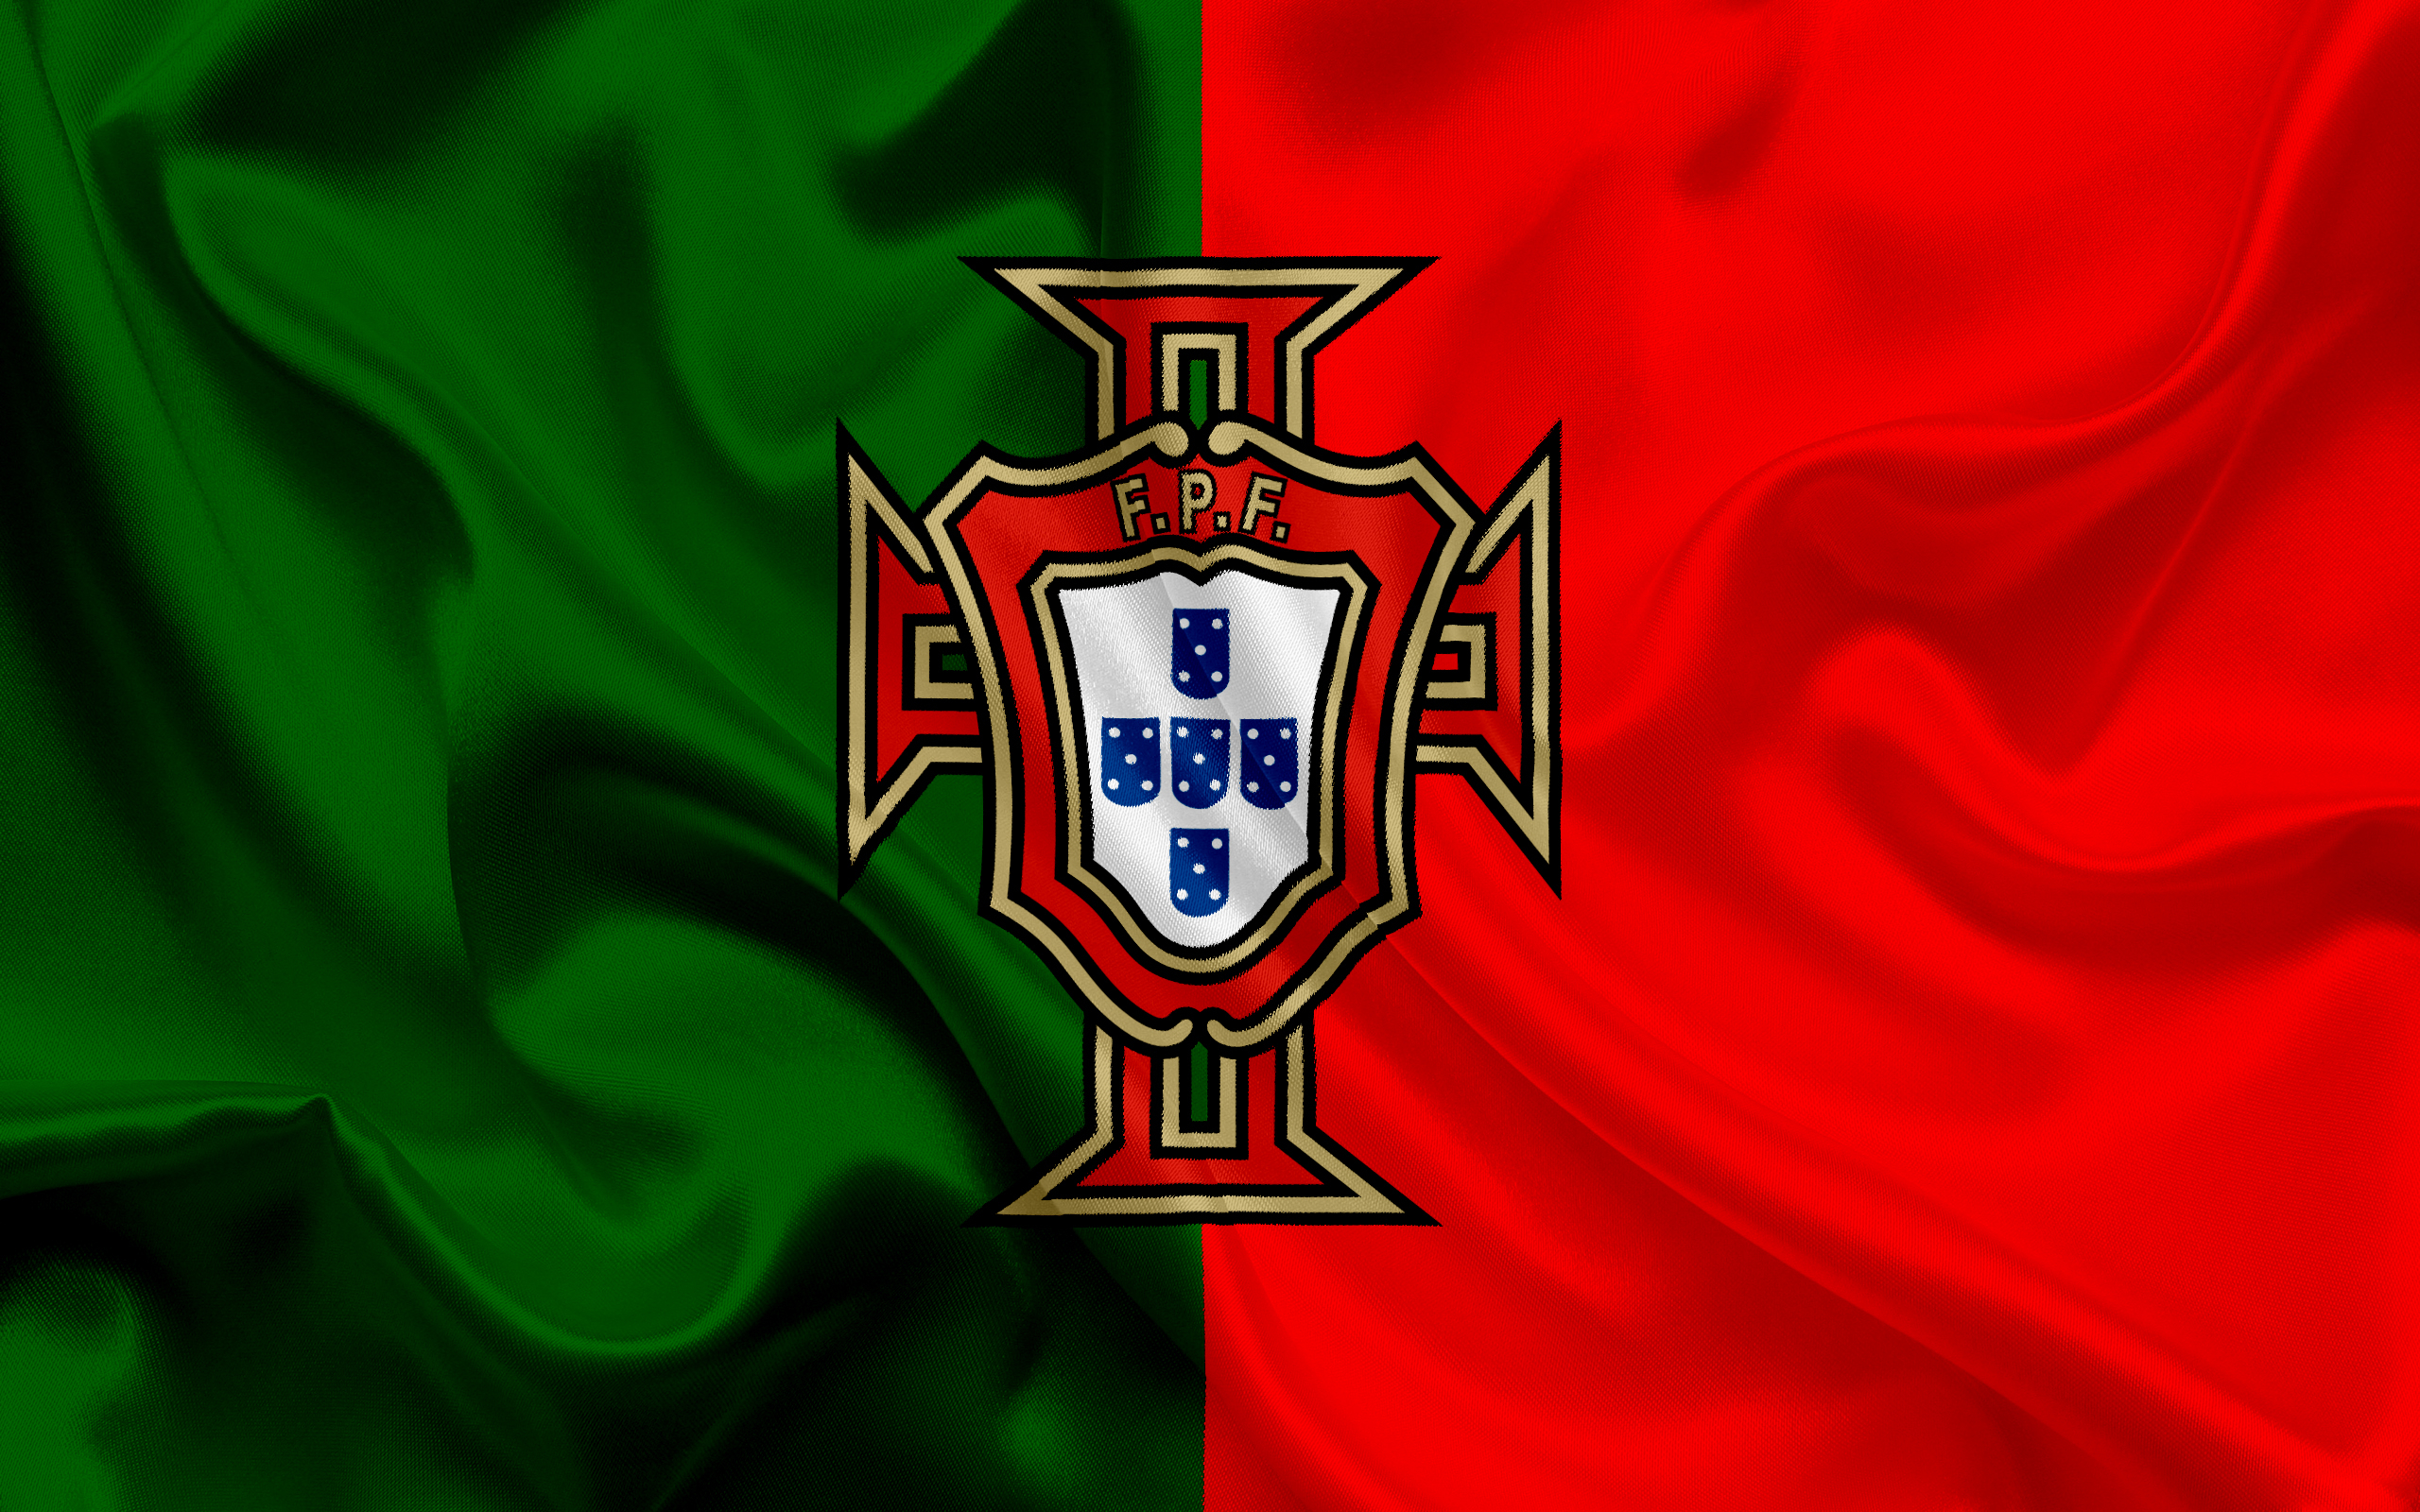 451880 Шпалери і Збірна Португалії З Футболу картинки на робочий стіл. Завантажити  заставки на ПК безкоштовно